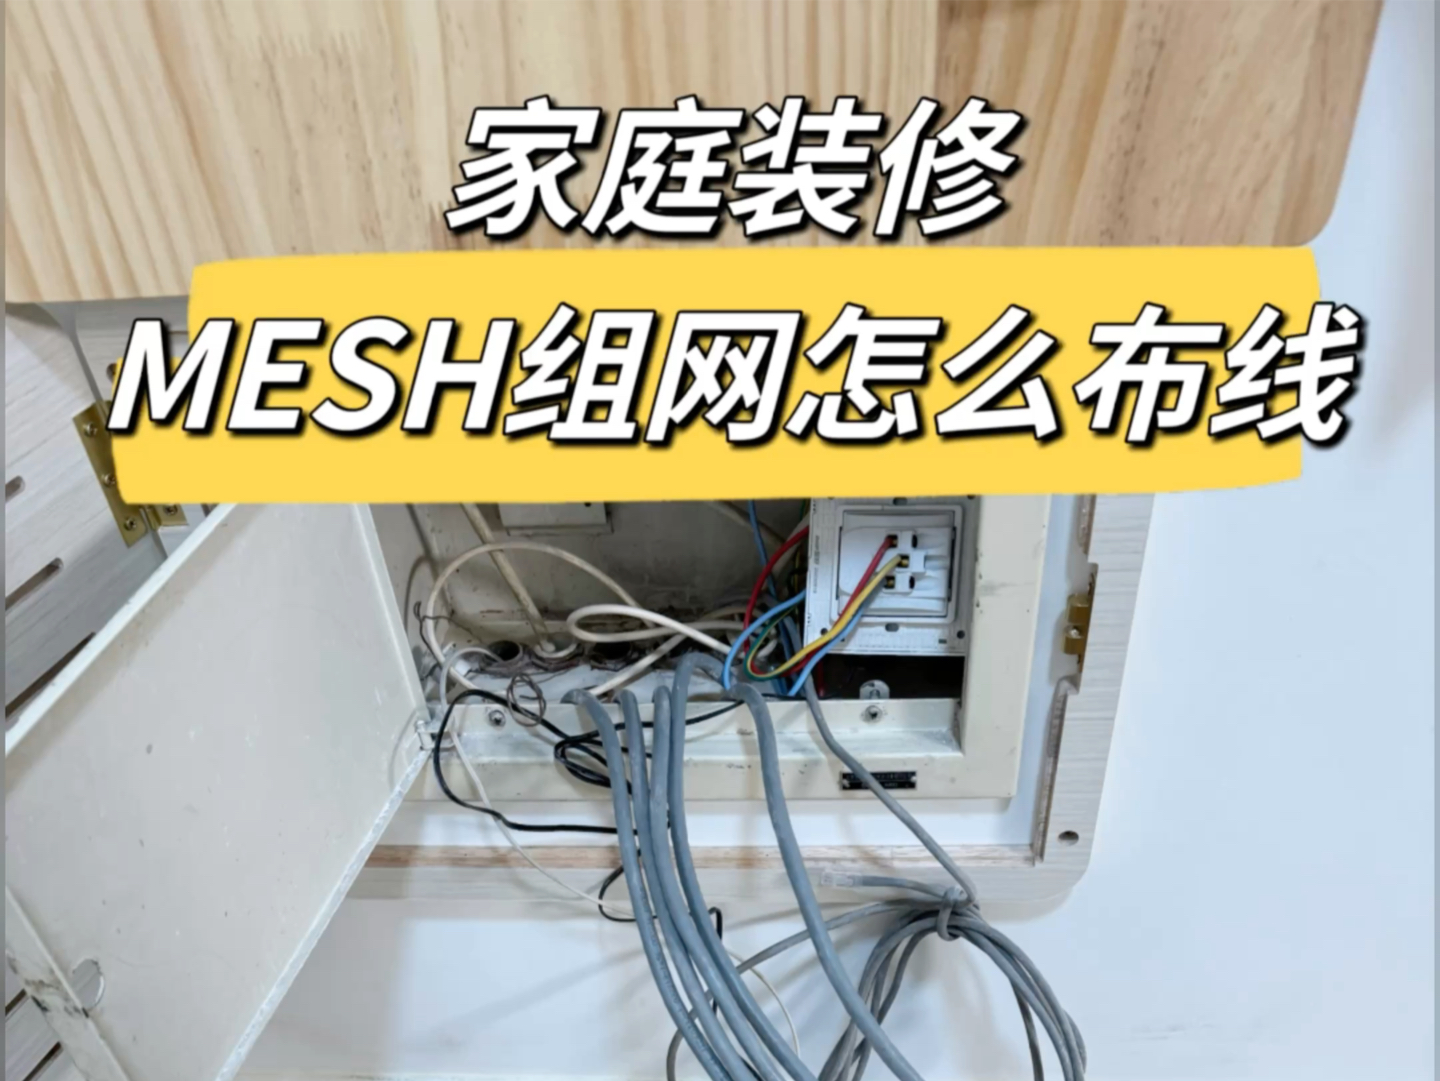 mesh组网方案，超级简单。一看就会！